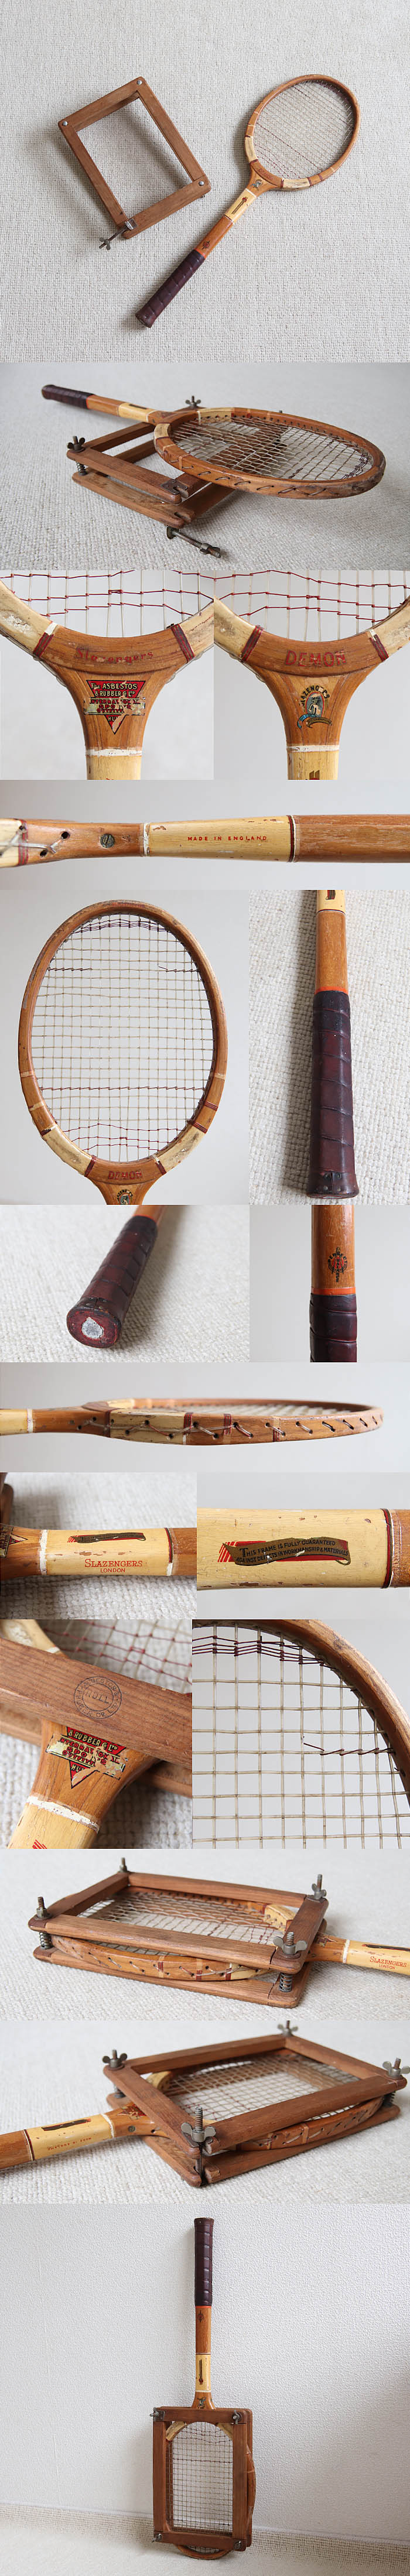 イギリス ビンテージ 木製 テニスラケット/ラケットプレス付き/インテリア/カバー/木枠【雰囲気つくりのディスプレイに】S-681